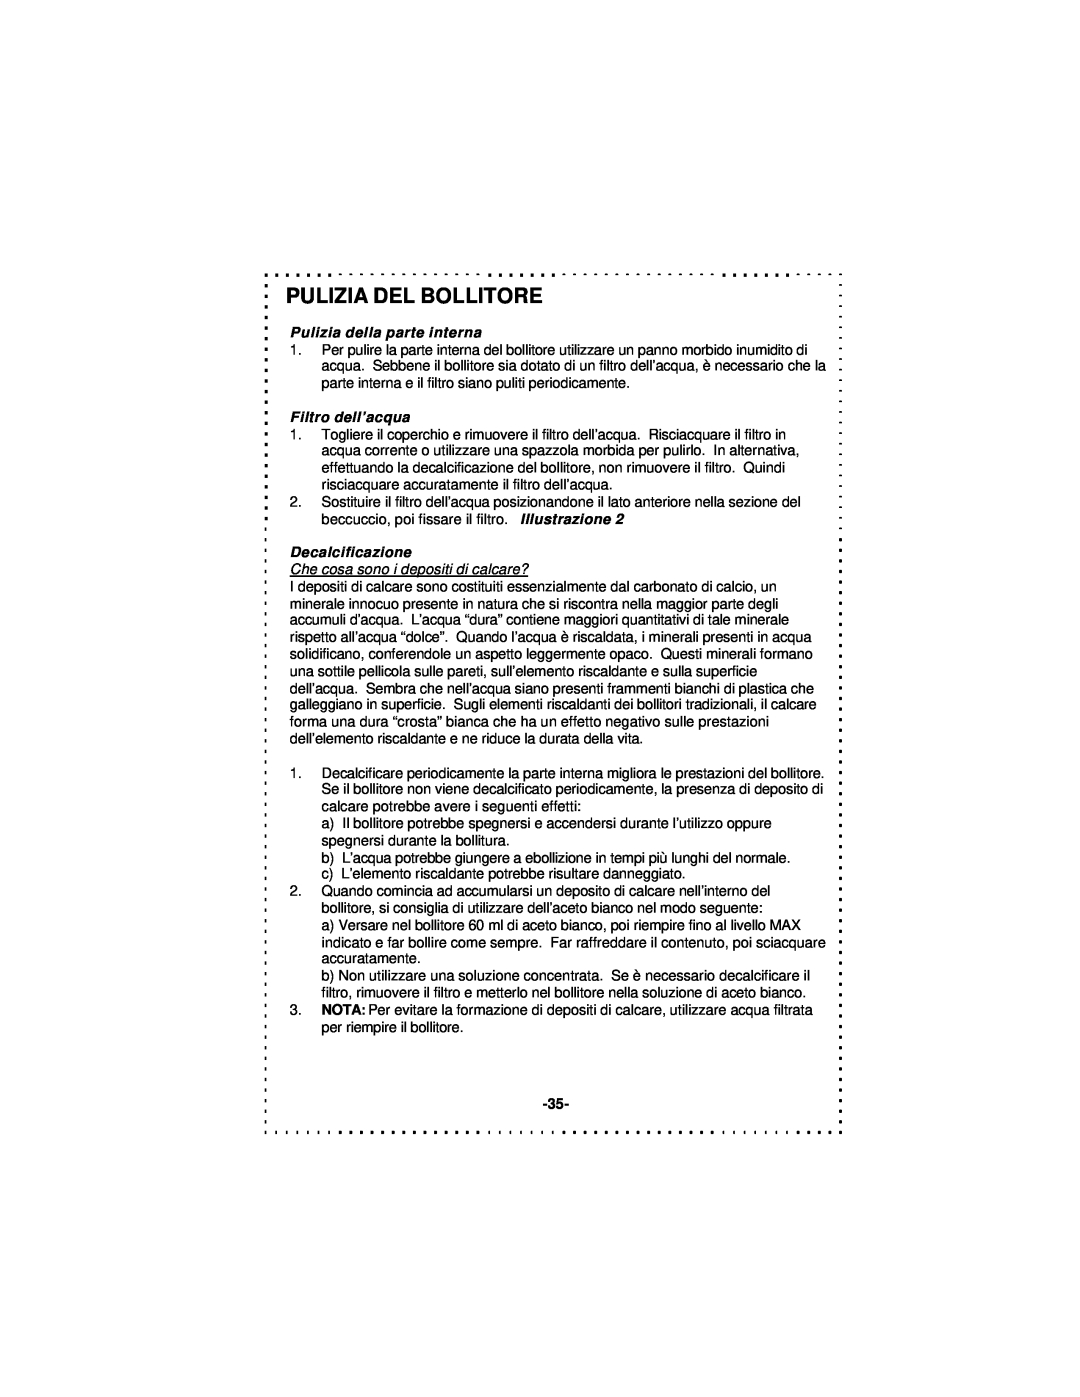 DeLonghi DSJ900 instruction manual Pulizia Del Bollitore, Pulizia della parte interna, Filtro dell’acqua, Decalcificazione 